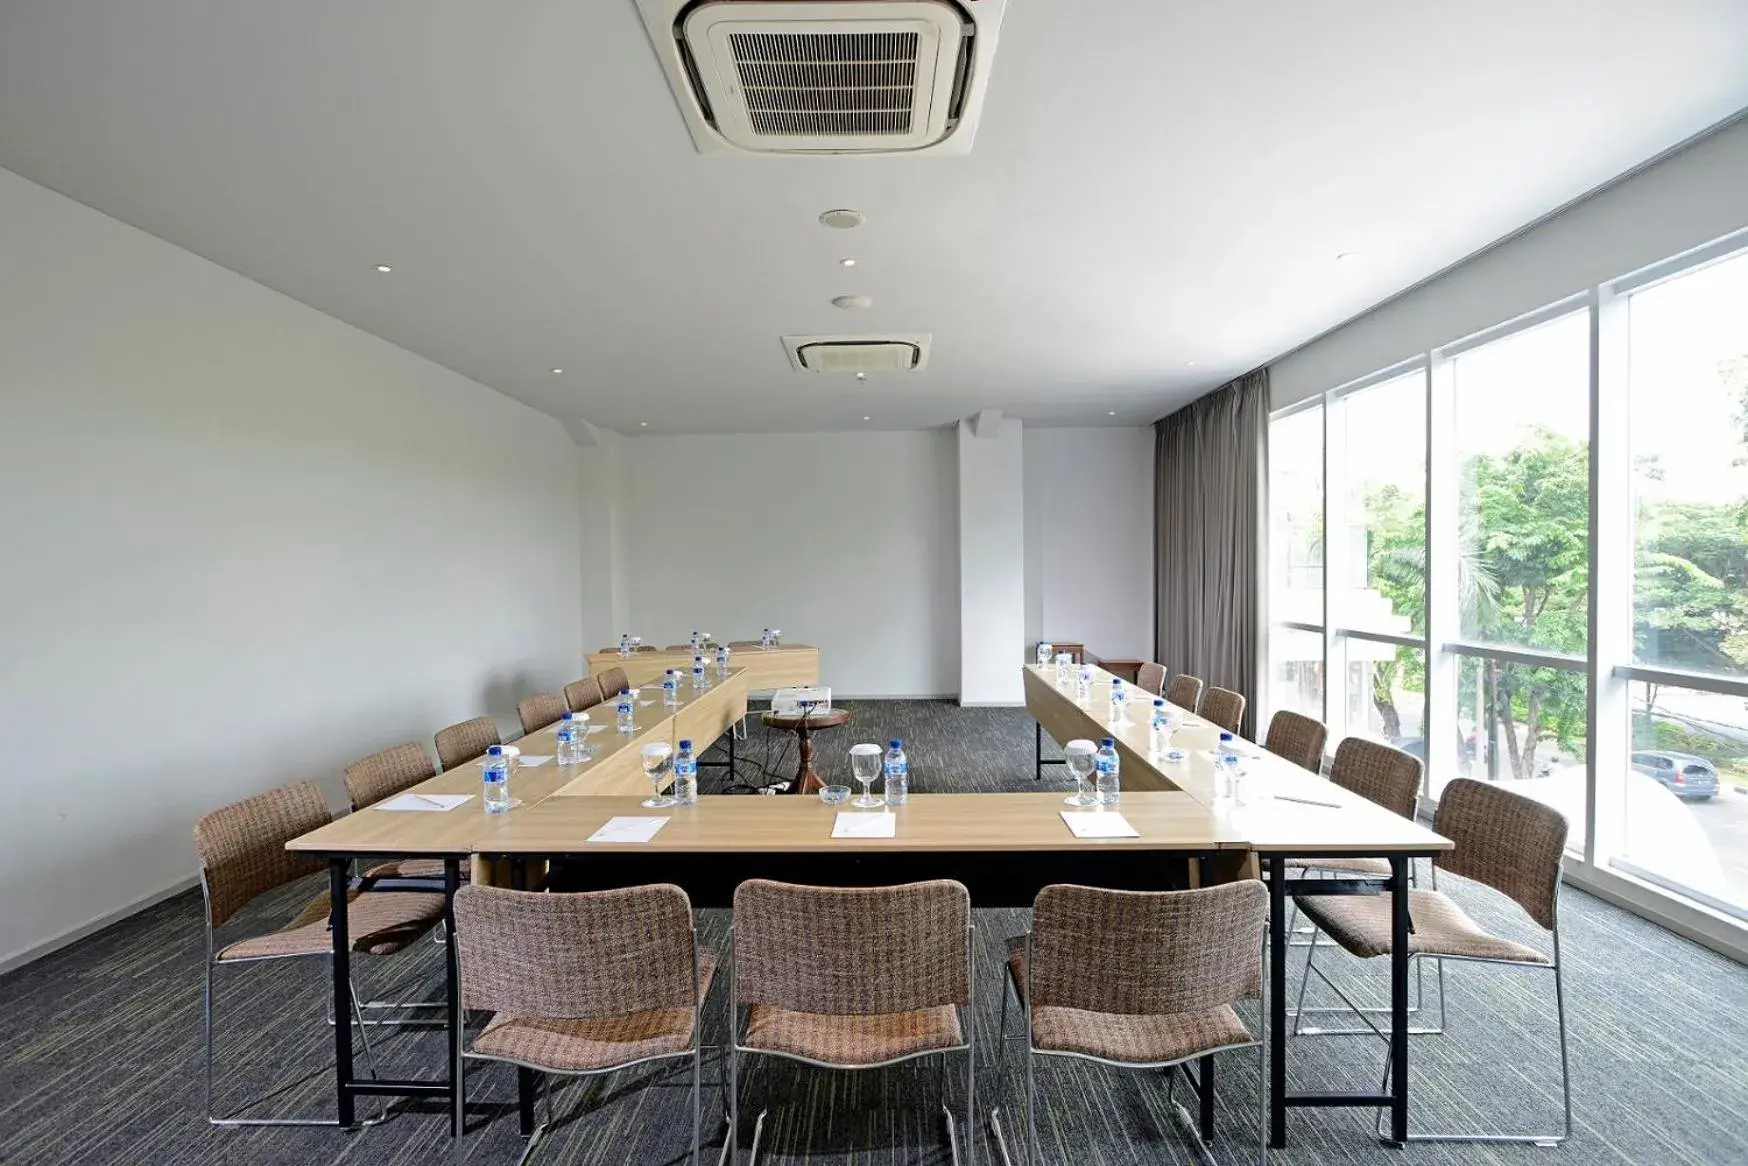 Meeting/conference room in La Lisa Hotel Surabaya